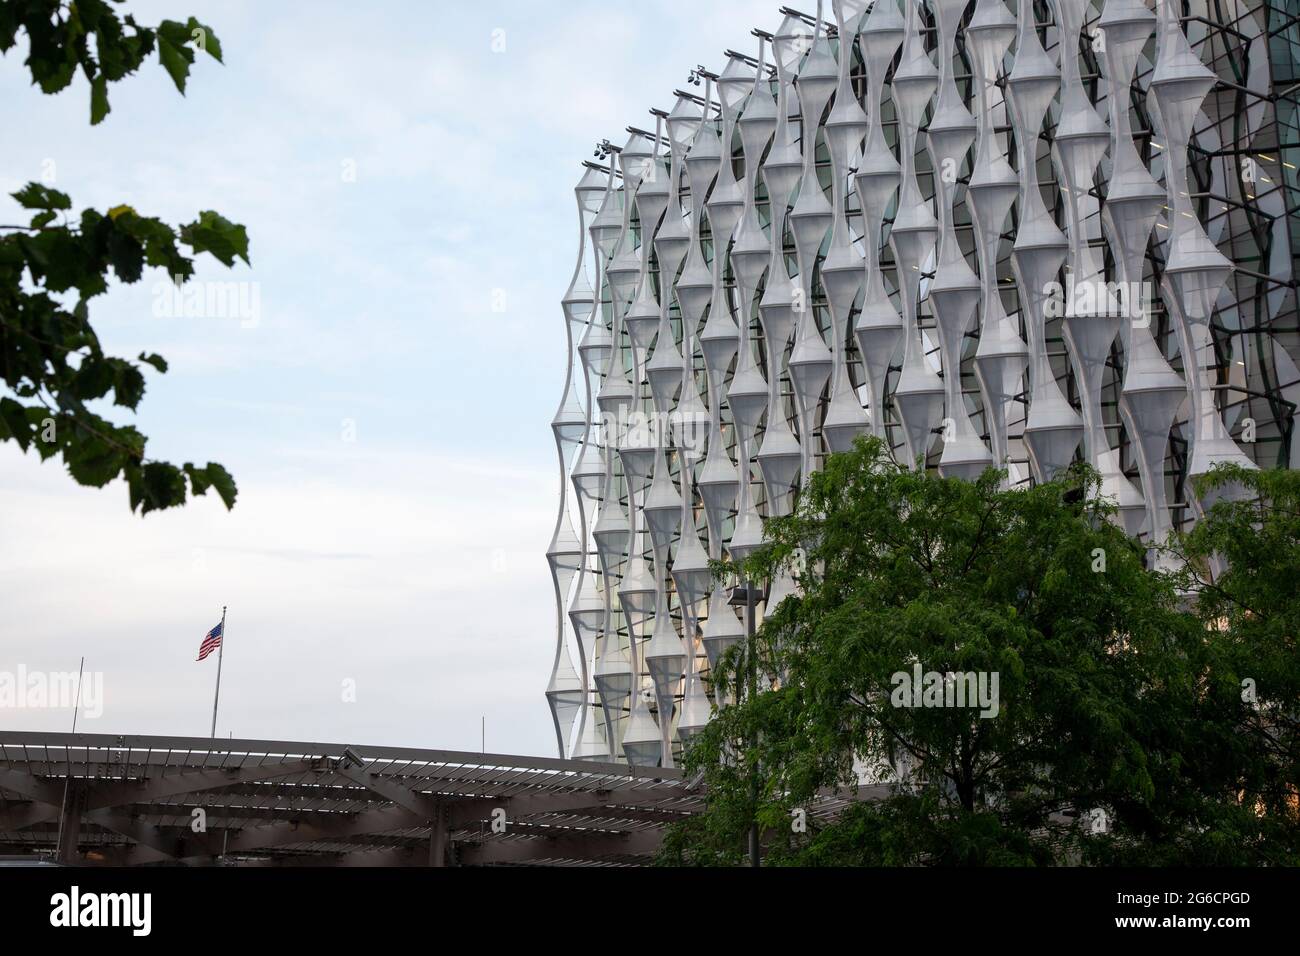 La nouvelle ambassade américaine dans le nouveau quartier de développement de Londres, Nine Elms, a été conçue par les architectes KieranTimberlake. Londres, Royaume-Uni. Banque D'Images